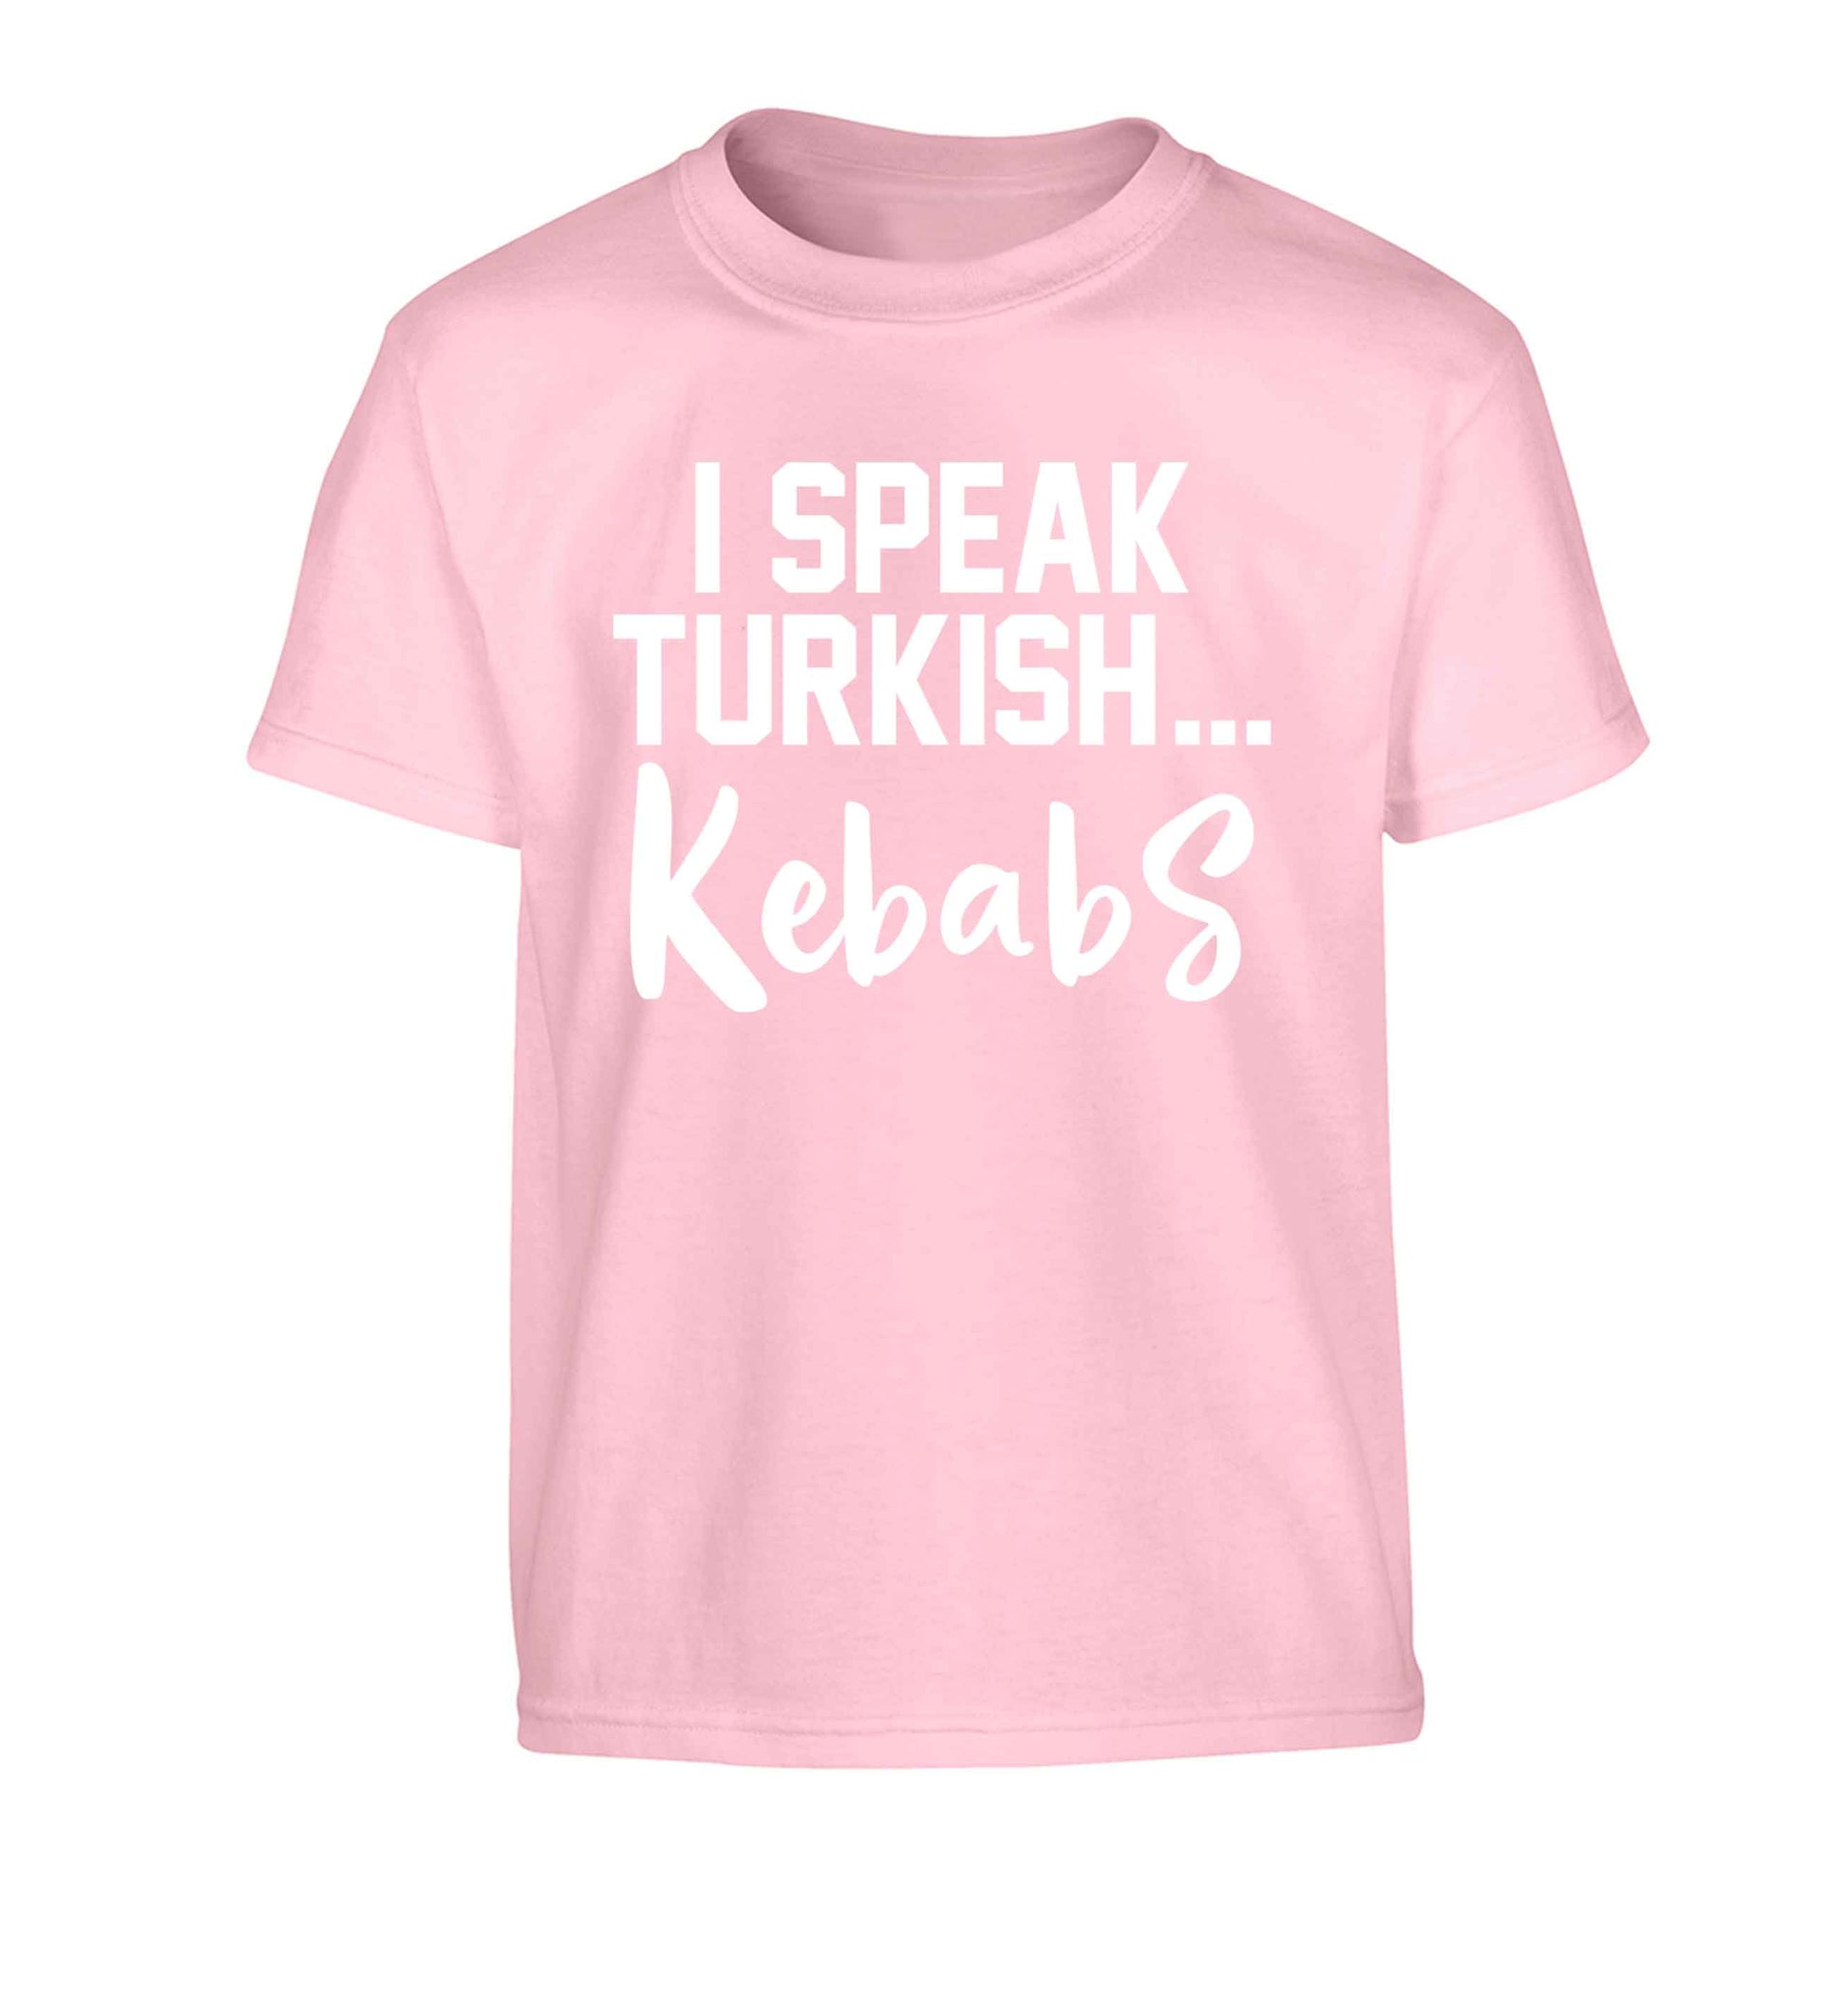 I speak Turkish...kebabs Children's light pink Tshirt 12-13 Years